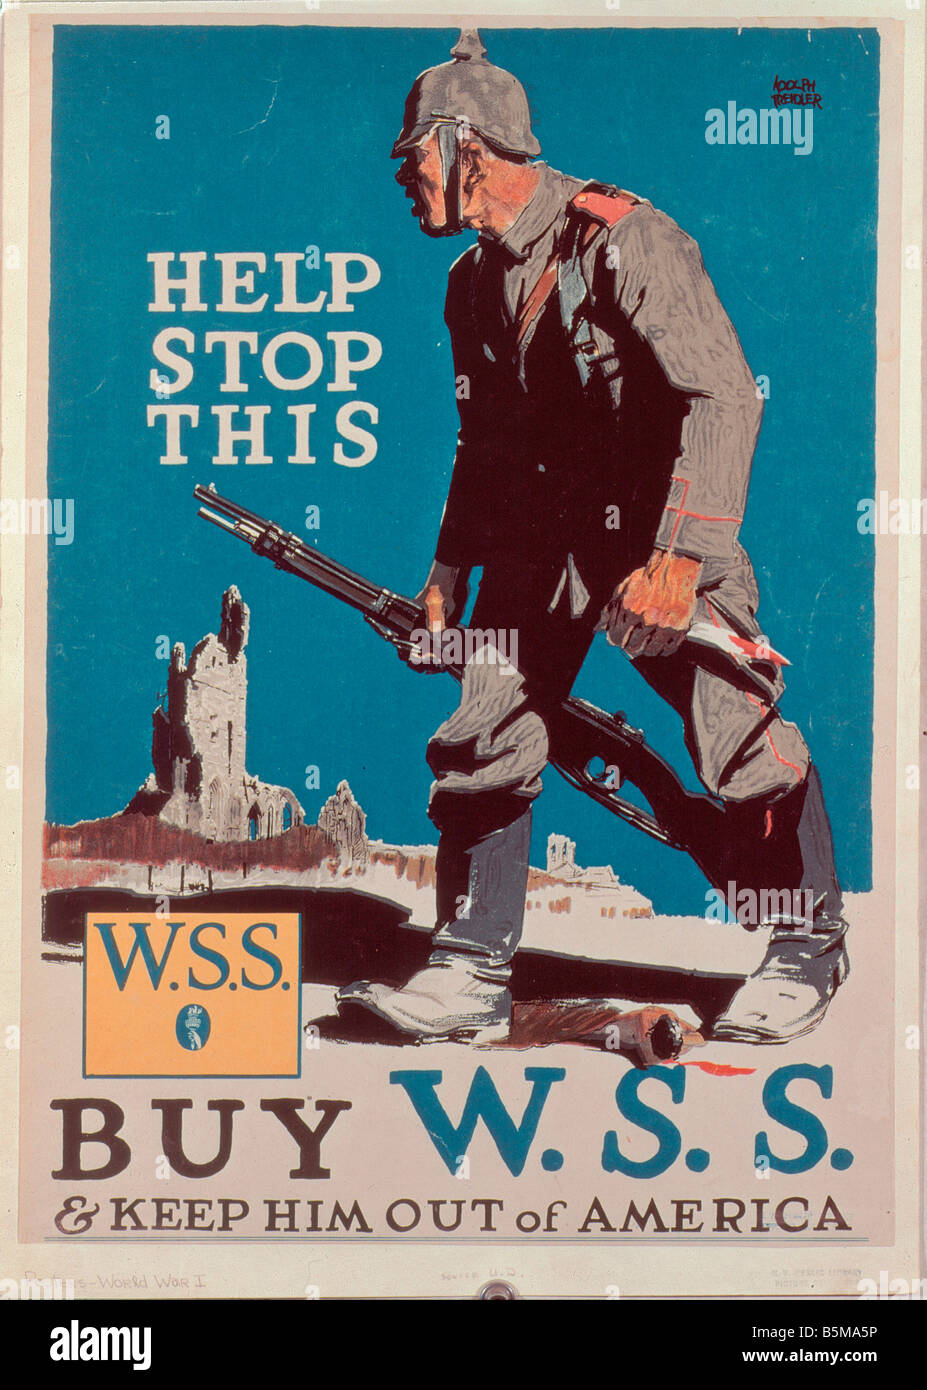 2 G55 P1 1917 9 E aident à arrêter cette histoire nous Poster 1917 18 la Première Guerre mondiale, aider à arrêter cette propagande Acheter W S S'empêcher de Ameri Banque D'Images